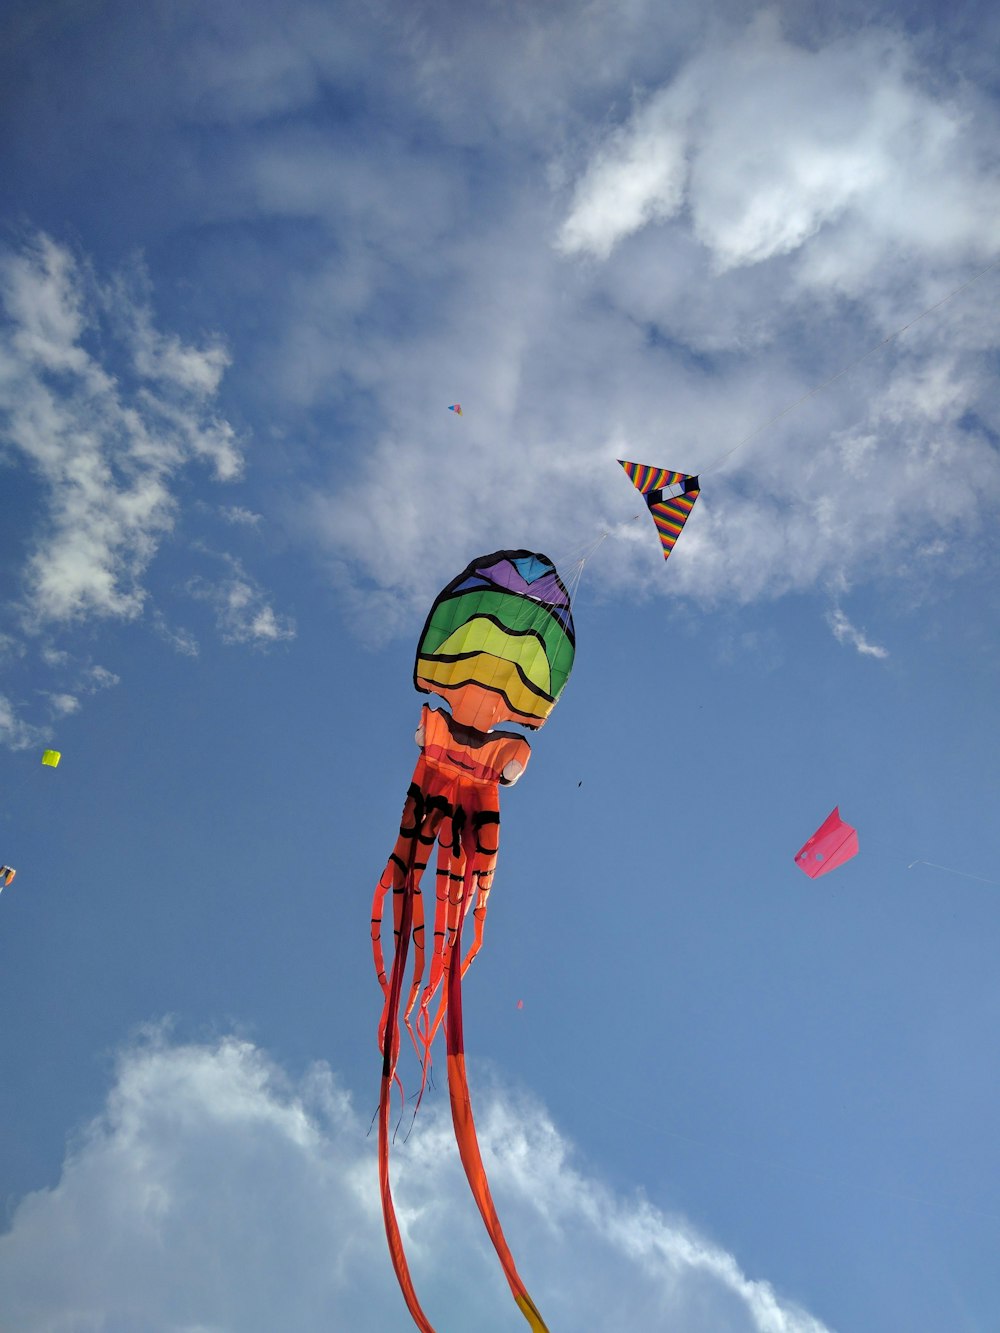 grün-gelber und roter Heißluftballon unter blauem Himmel